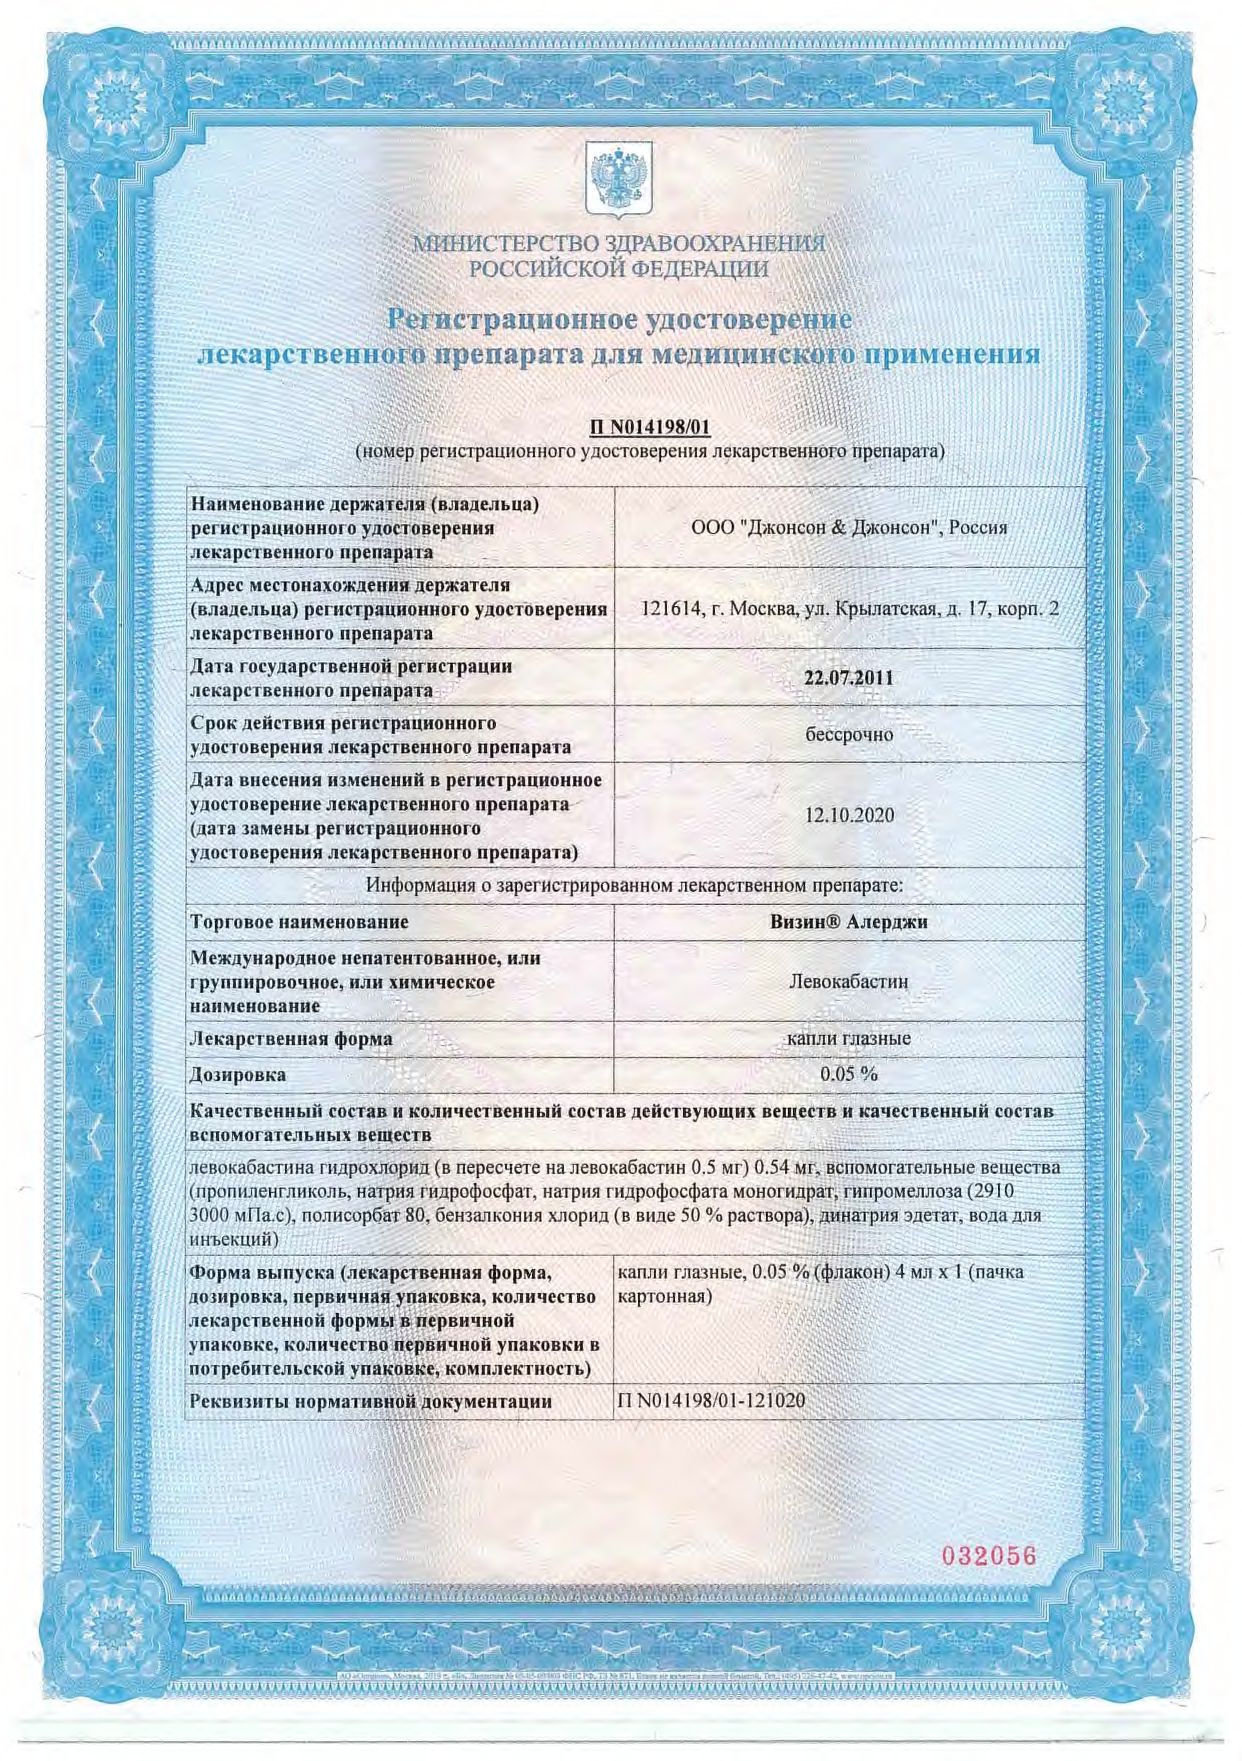 Визин Алерджи сертификат